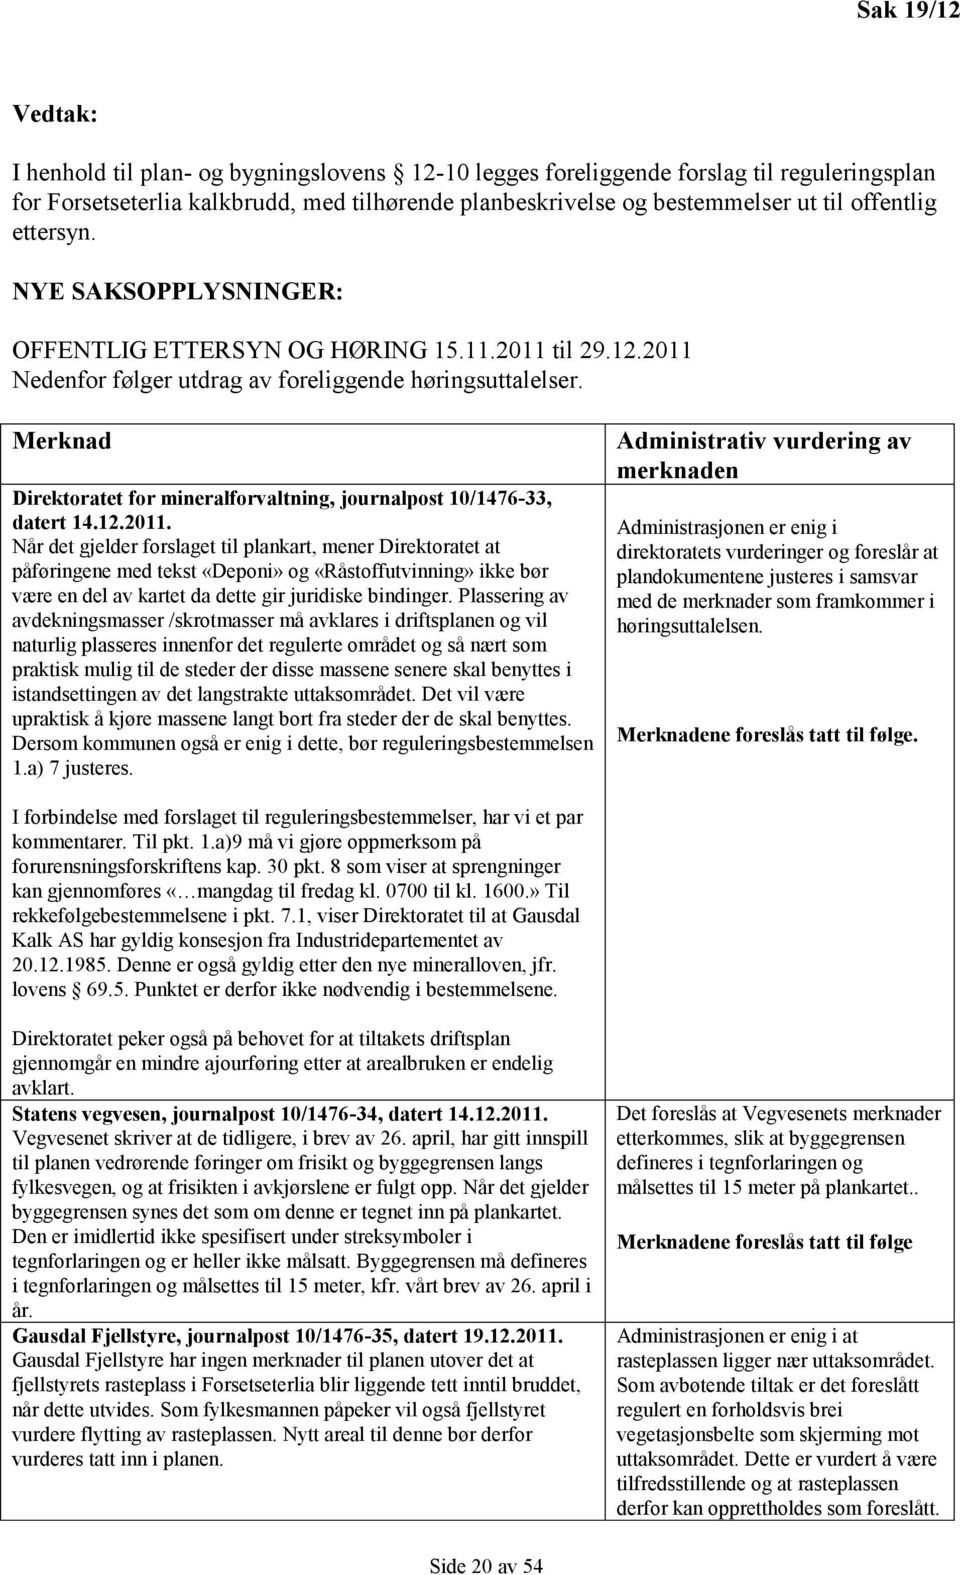 Merknad Direktoratet for mineralforvaltning, journalpost 10/1476-33, datert 14.12.2011.